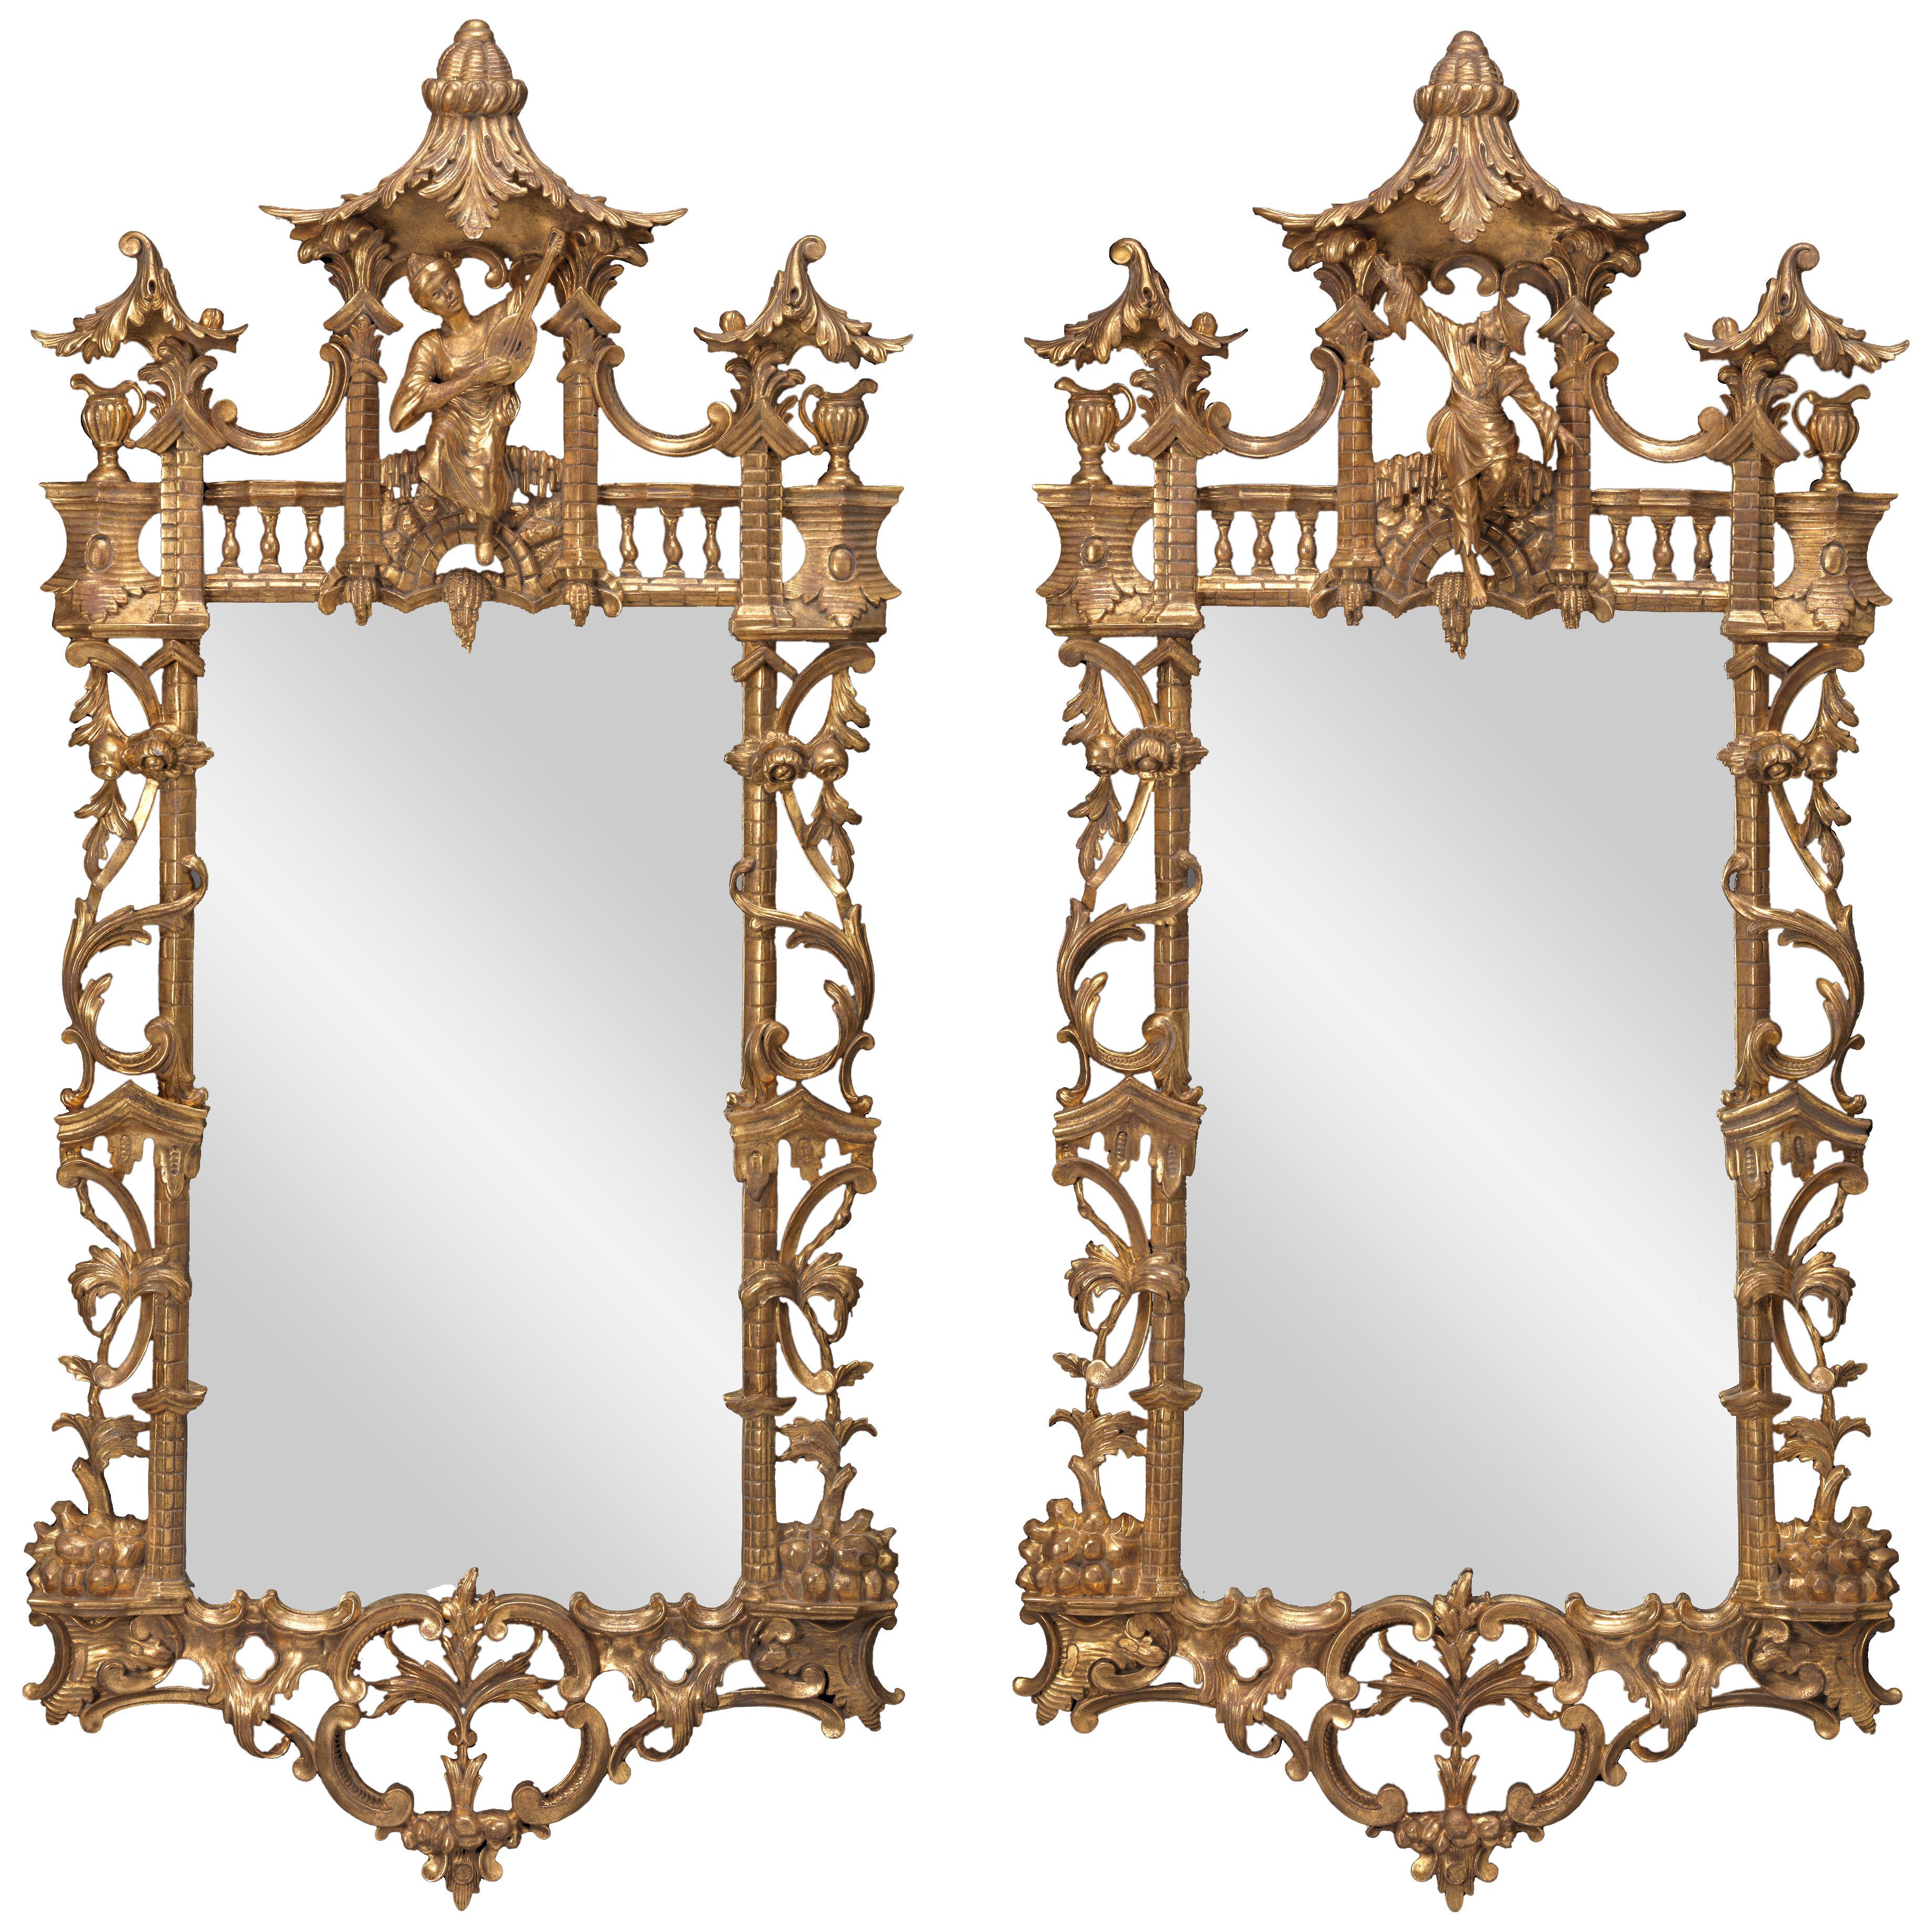 The Edmondsham Chinoiserie Mirrors